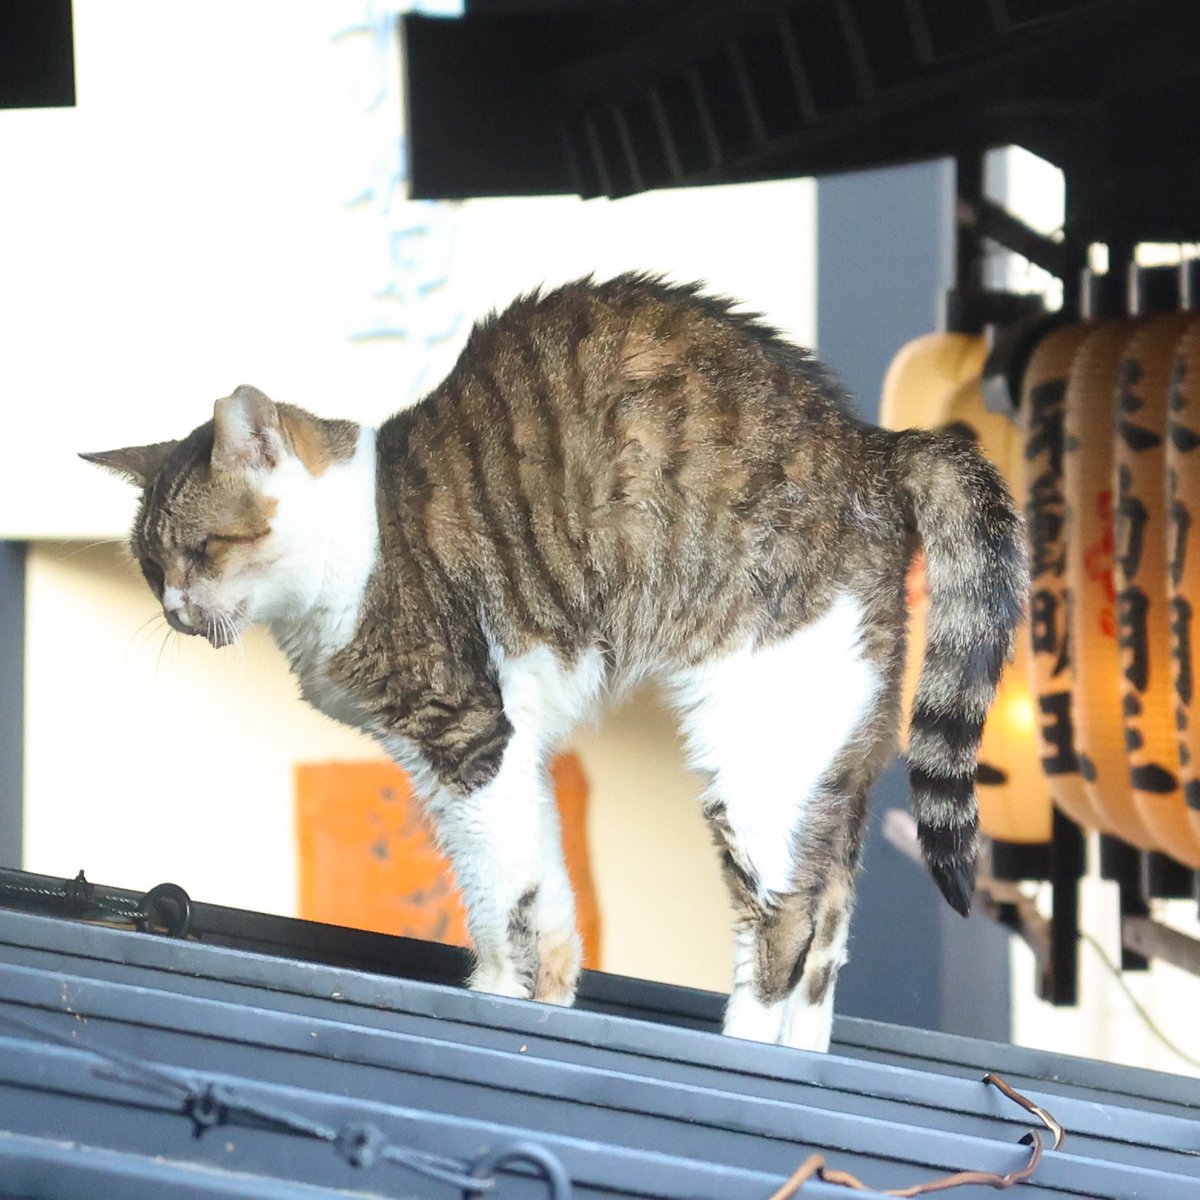 #streetcat
#osaka #japan
#蔵出し 
#猫背　#笑
#猫　#ネコ　#ねこ　
#桜耳
#ミナミ #大阪
#nocat #nolife